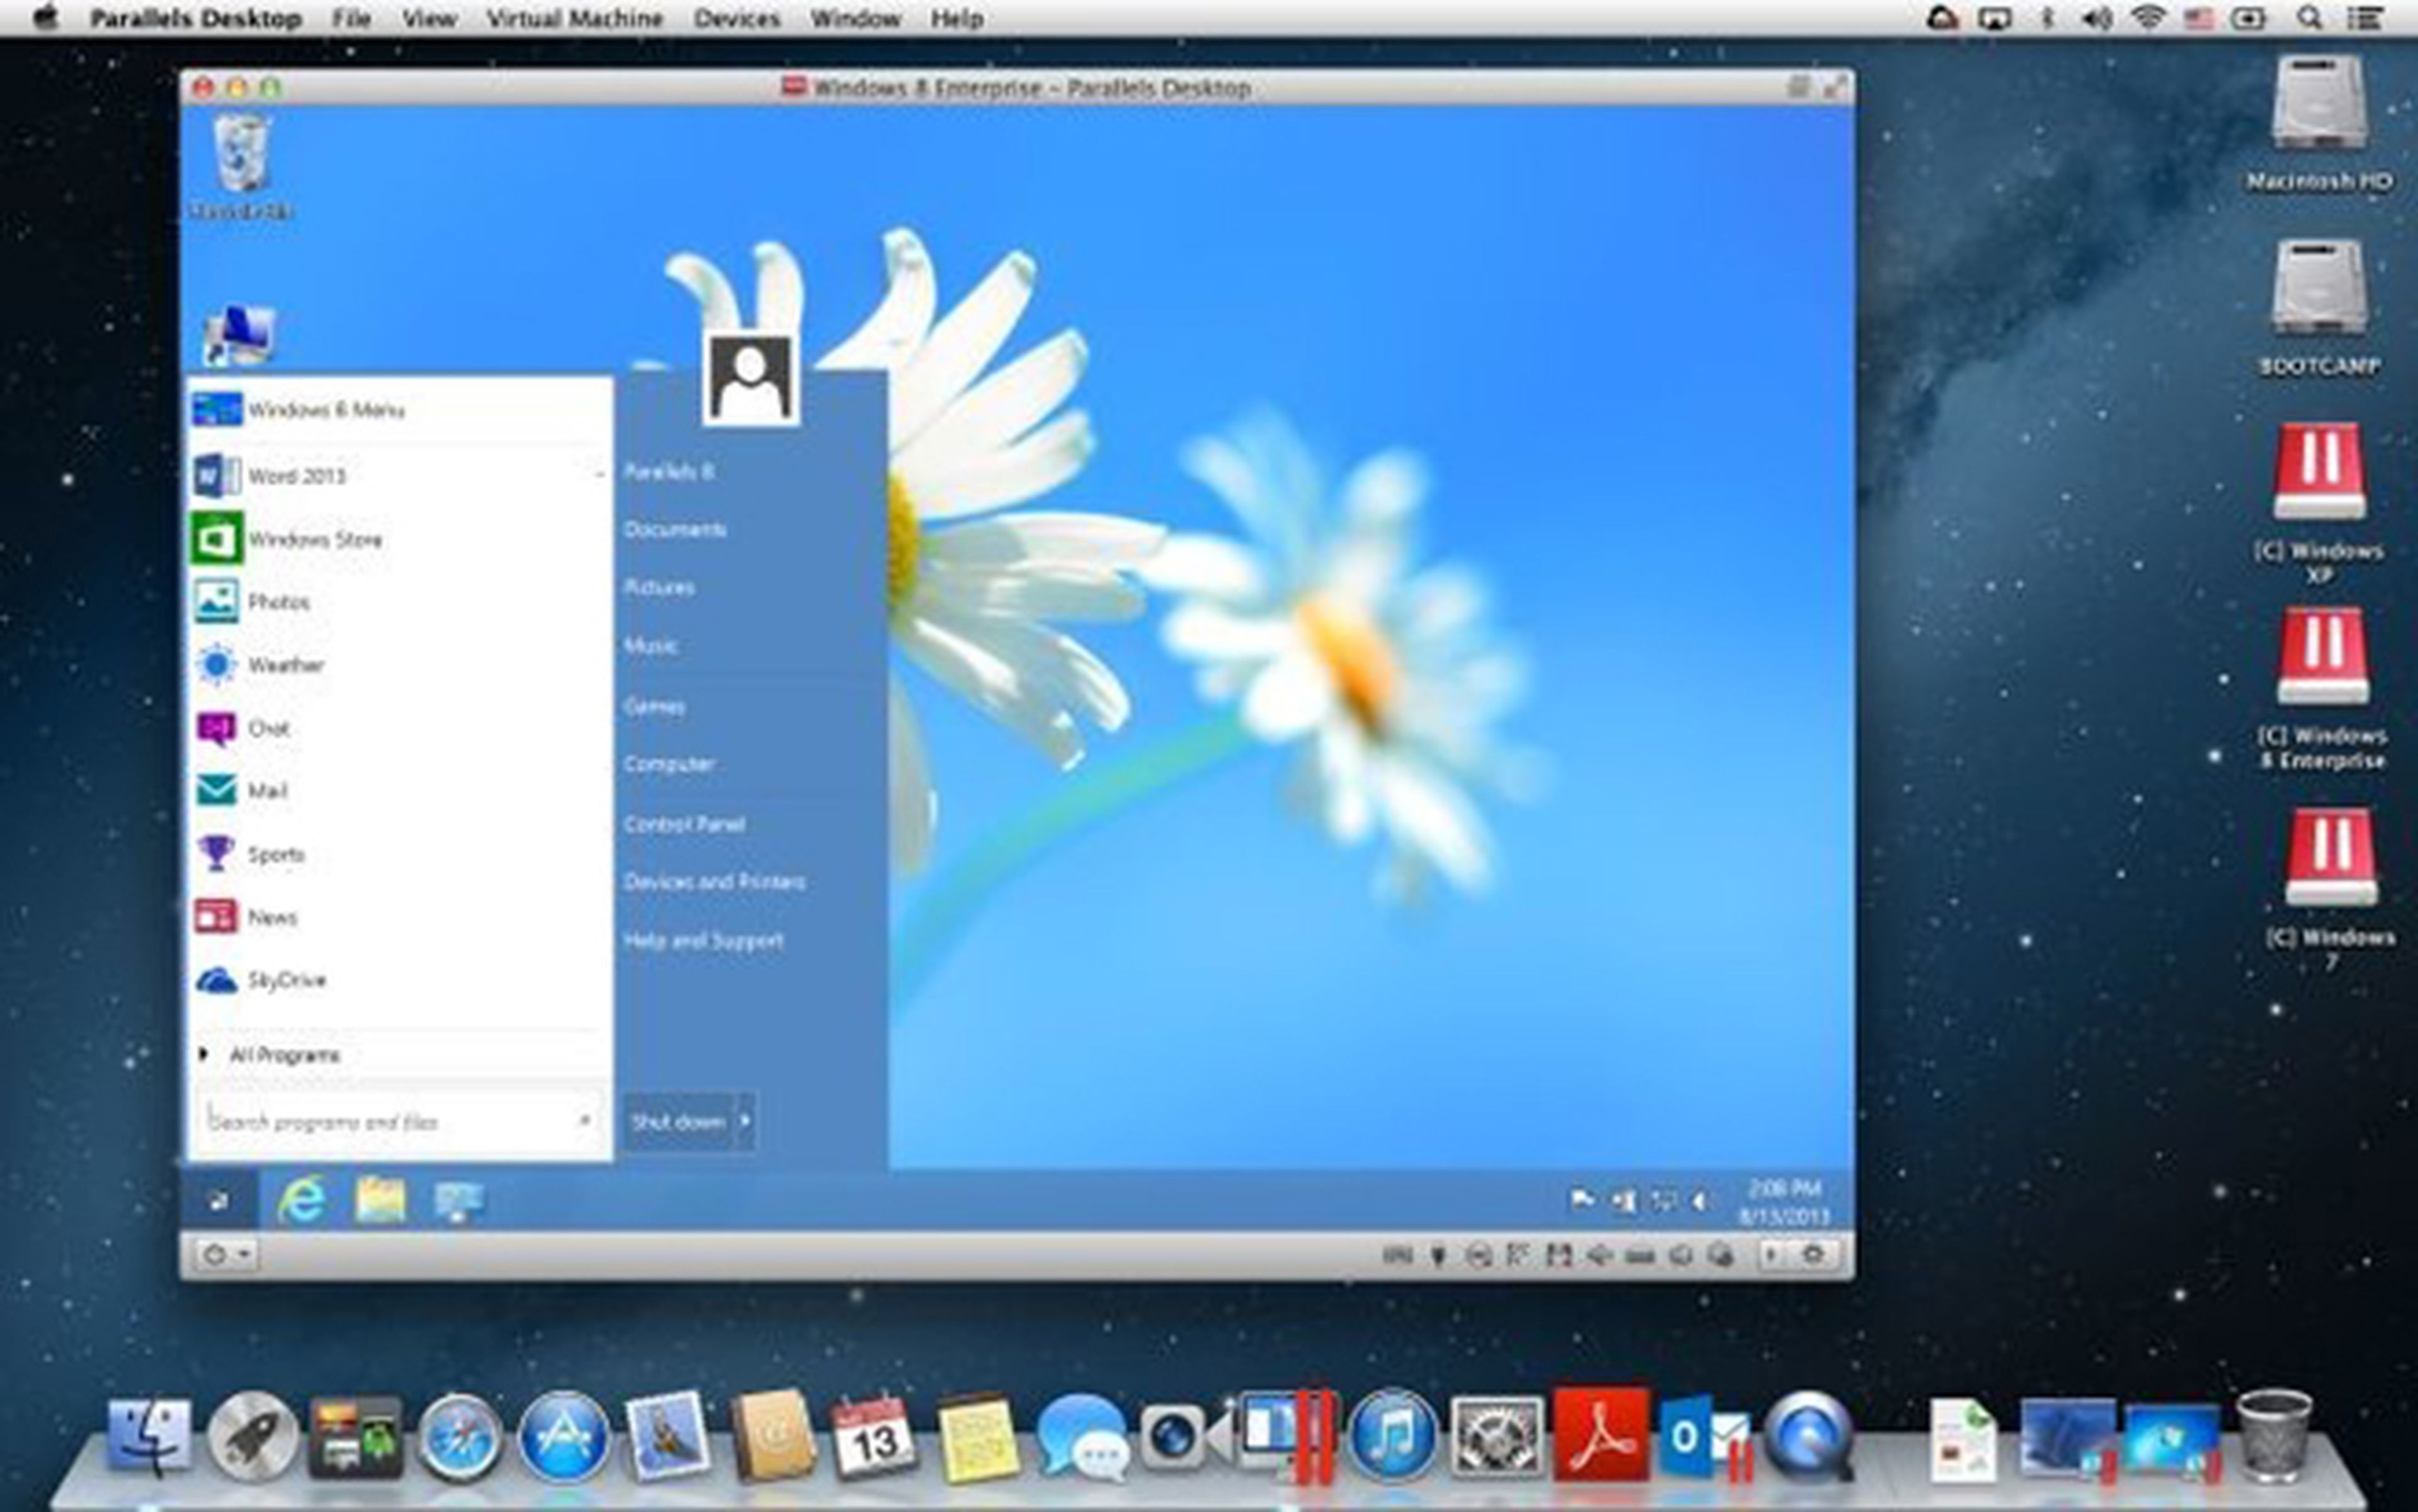 menú inicio windows 8 parallels desktop 9